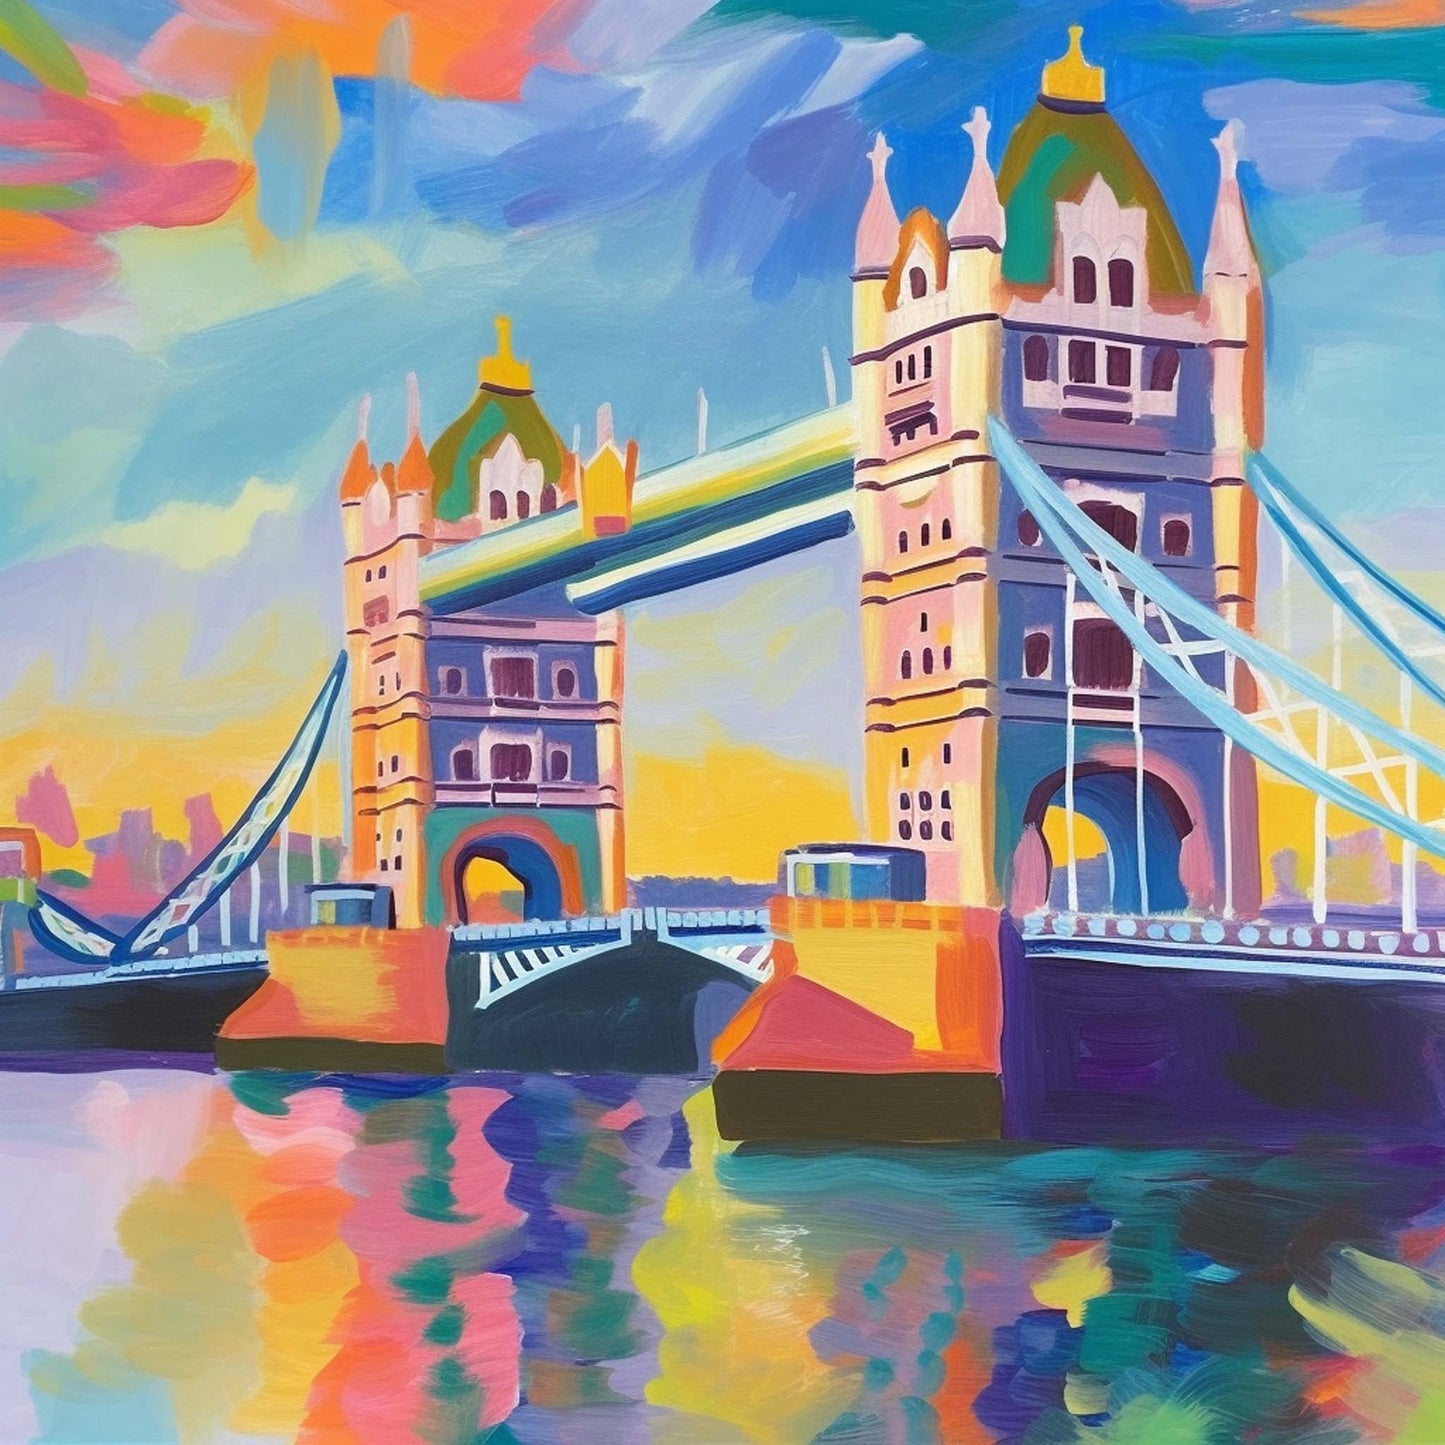 Urbanisto - London Tower Bridge - Wandbild in der Stilrichtung des Impressionismus